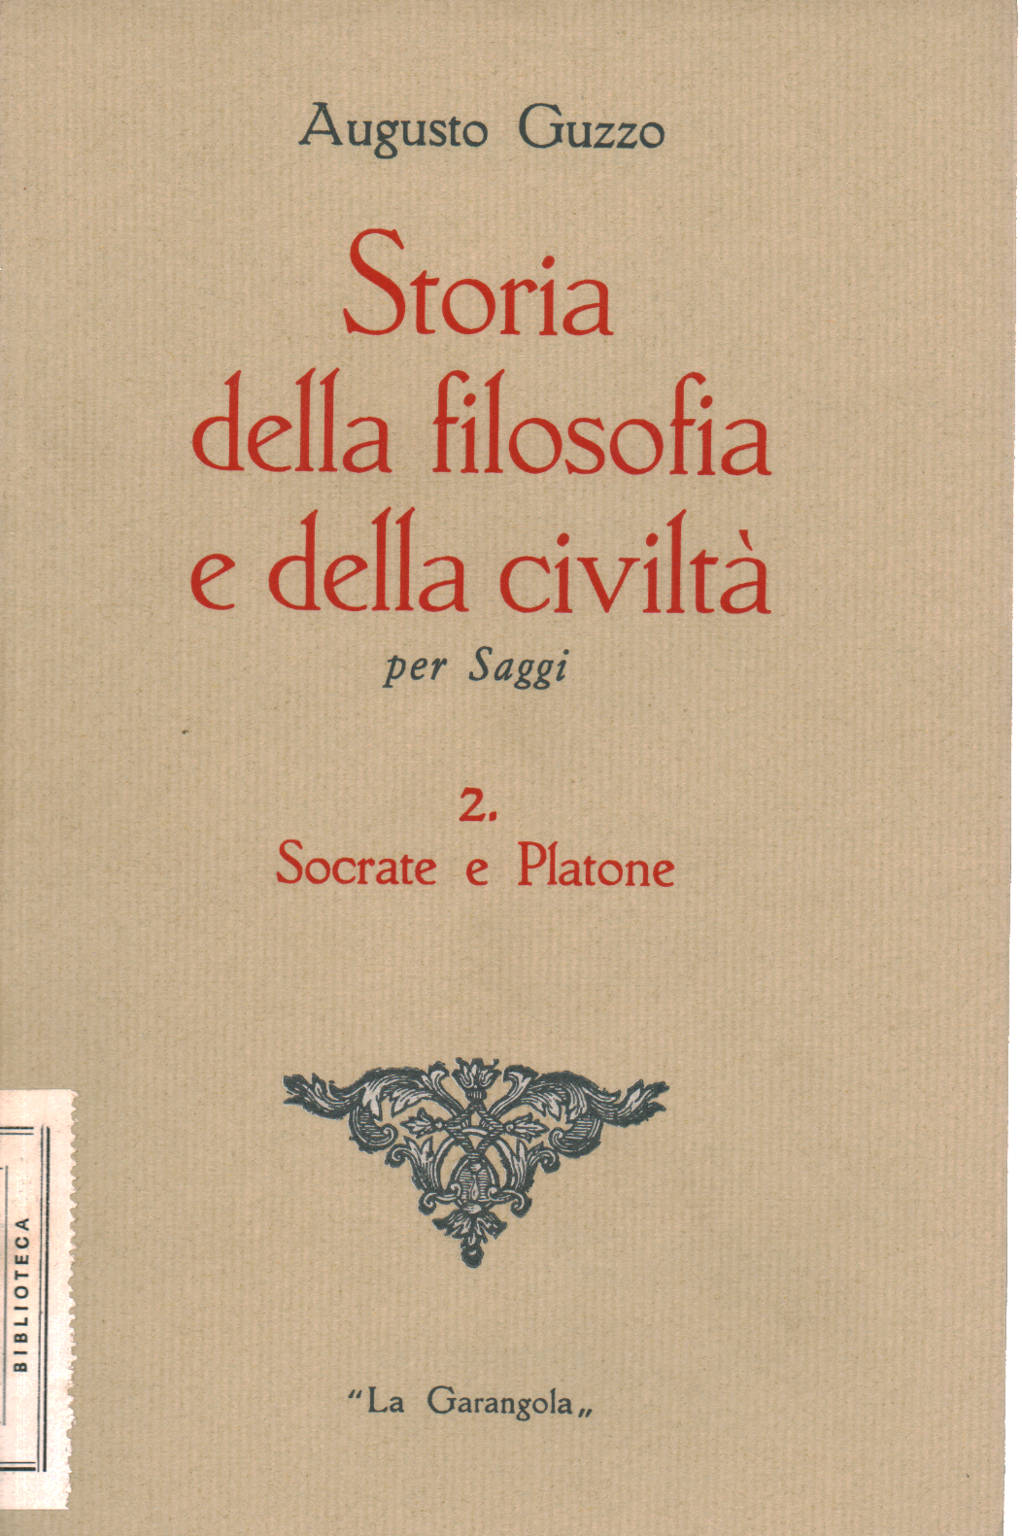 Socrate et Platon, Augusto Guzzo